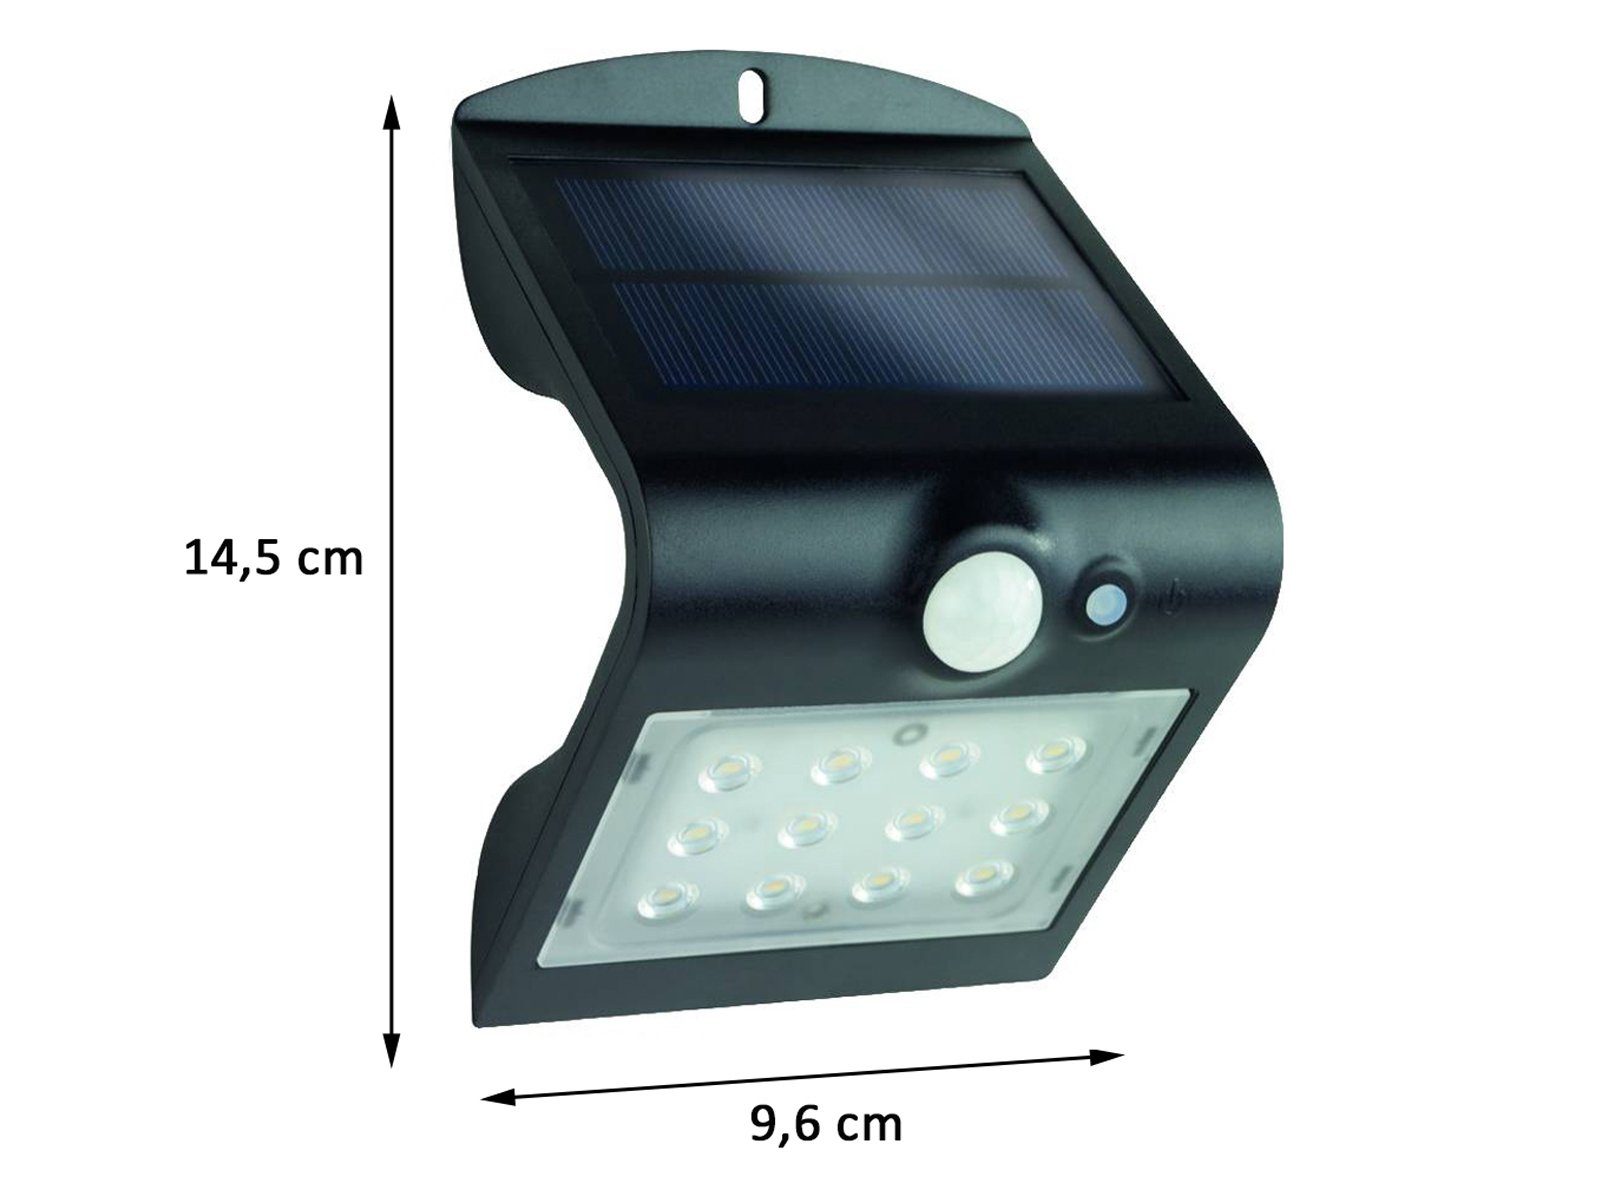 LEDSolar Strahler Lampe mit Bewegungsmelder Außenleuchte Garage Außen Spot Licht 